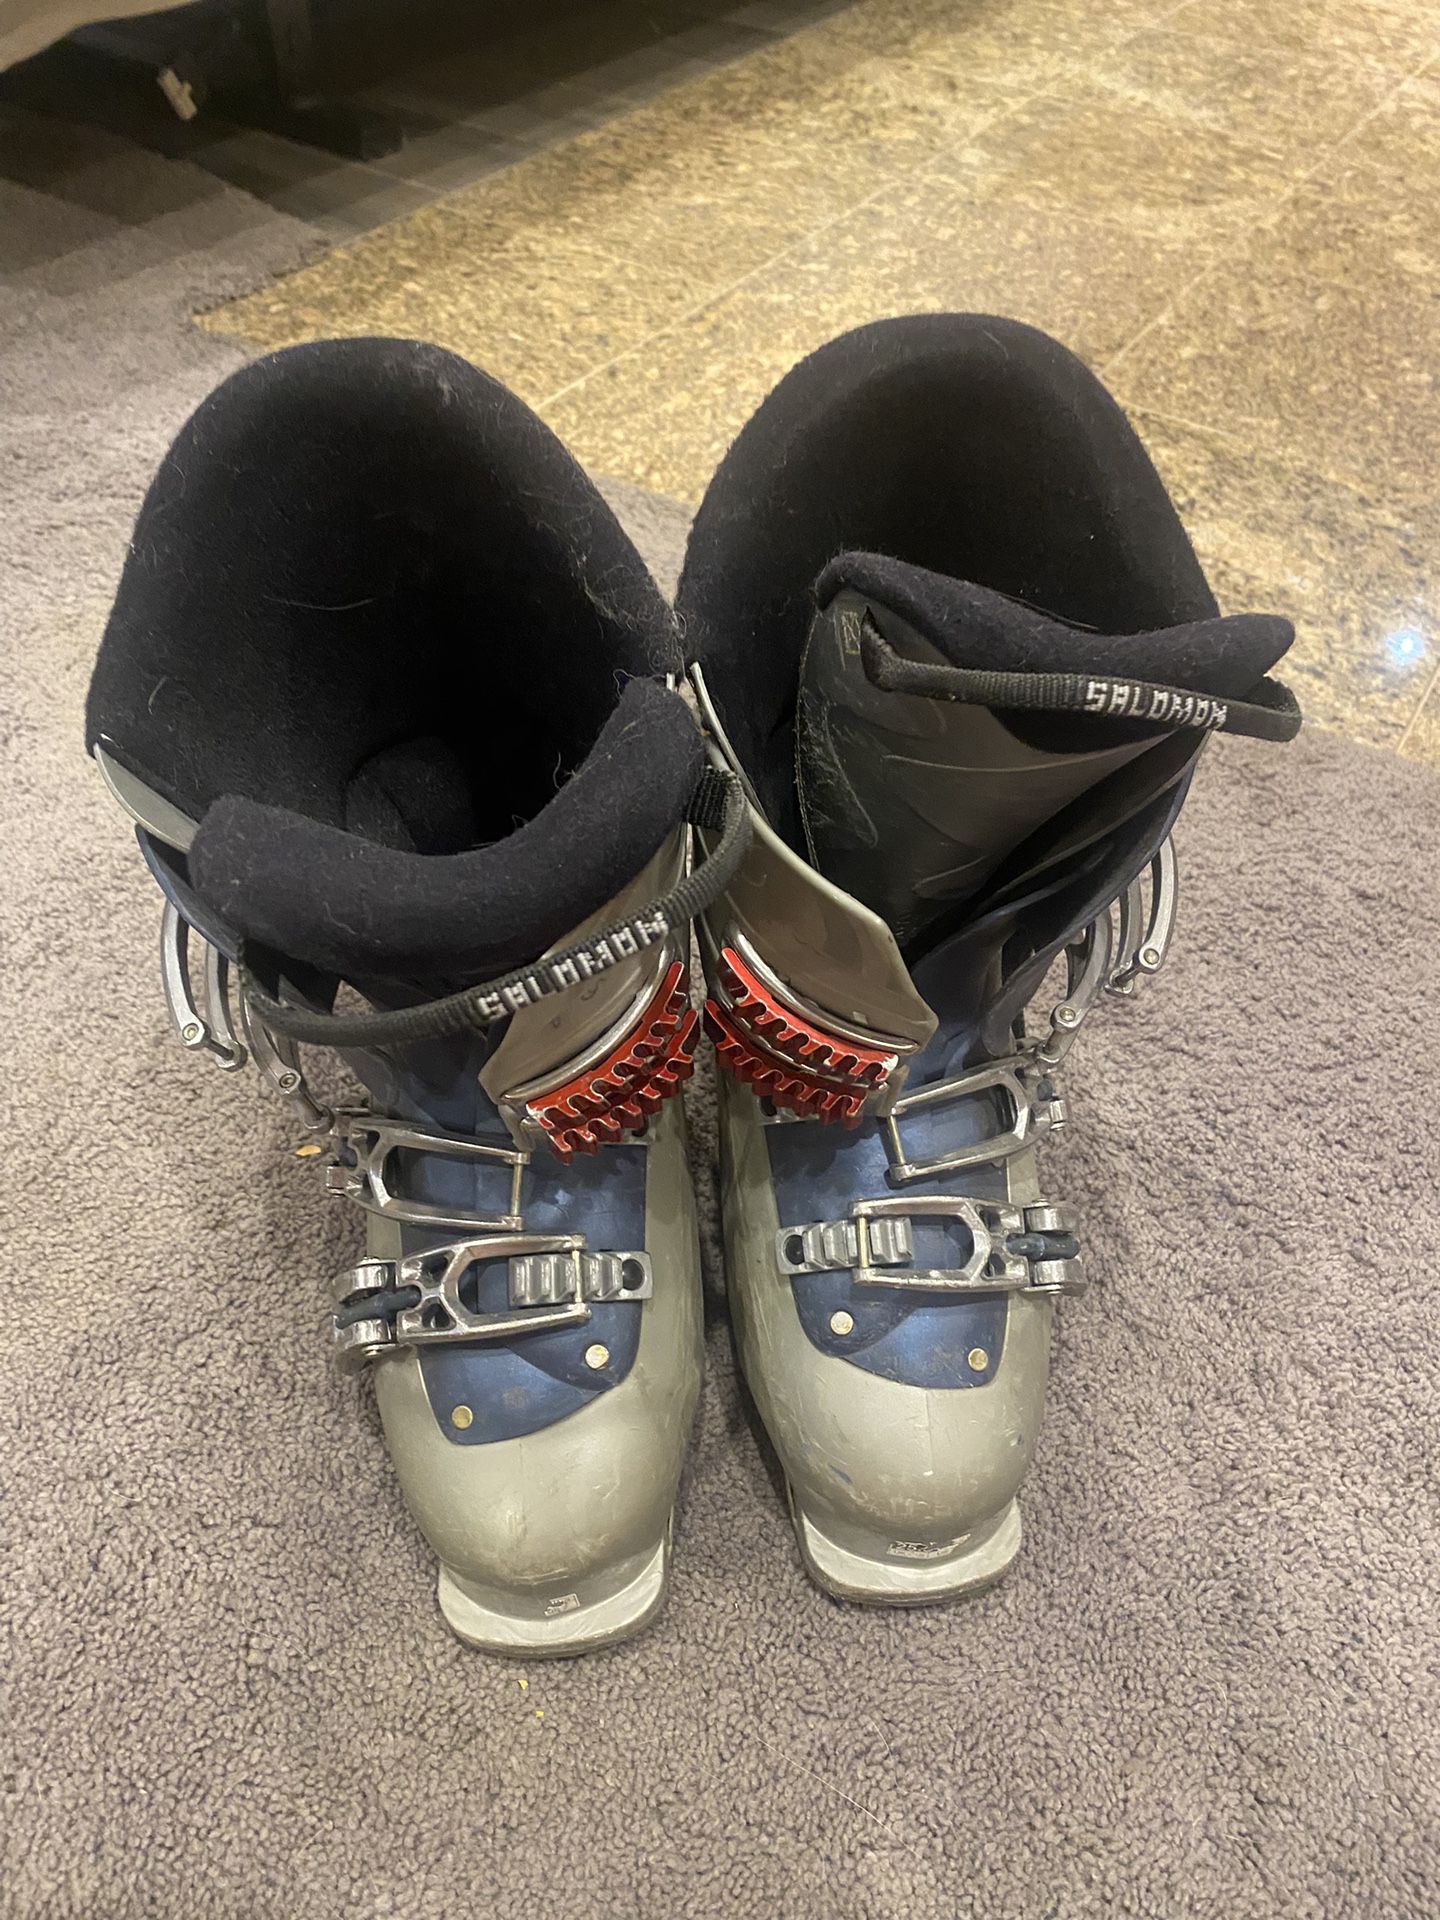 Salomon 660 Ski Boots